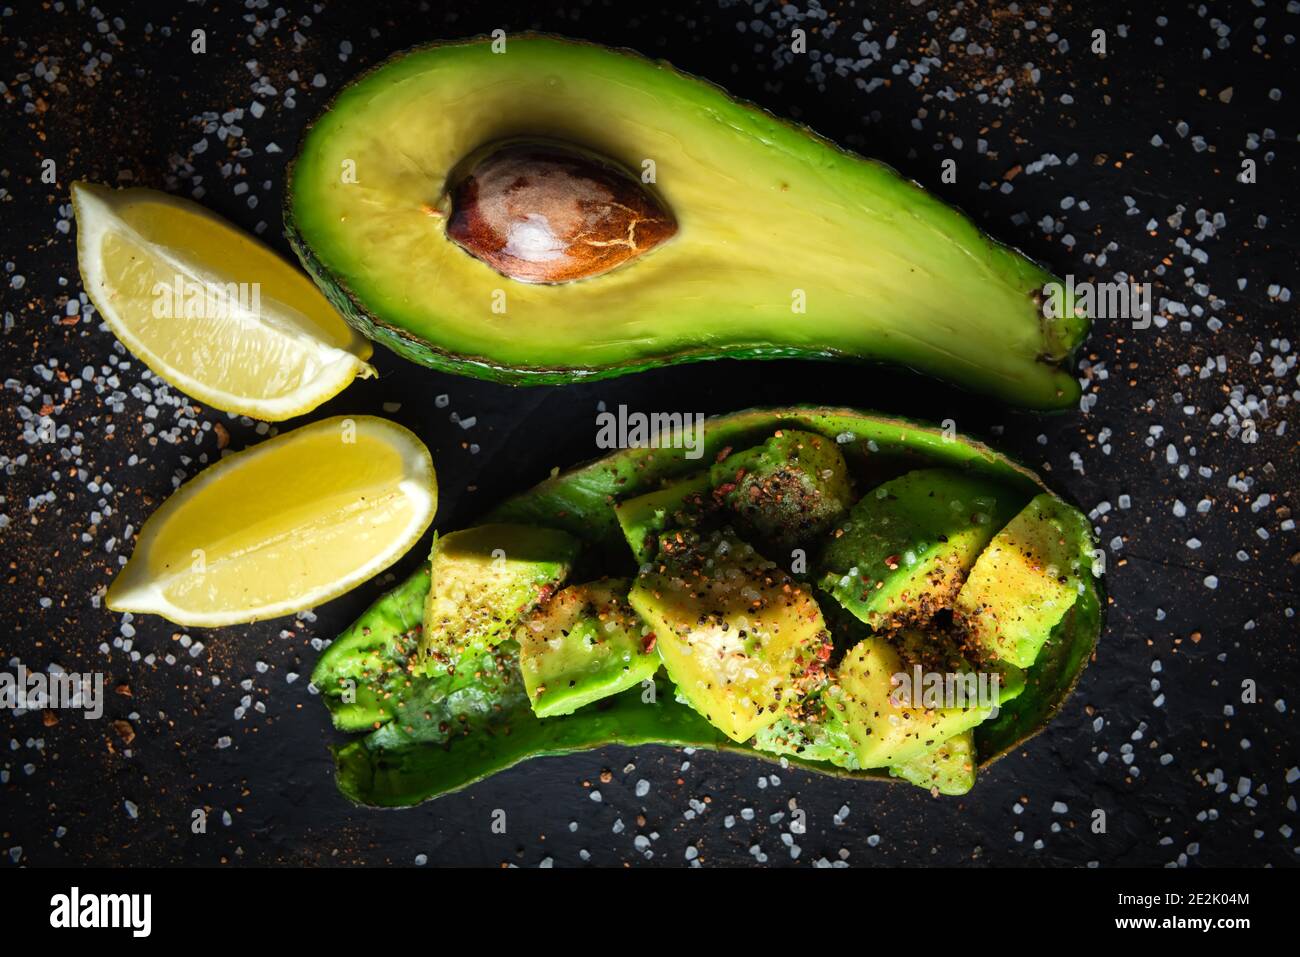 Fresco frutto di avocado su un nero scheda rustico. Il concetto di mangiare sano. Fotografia di cibo Foto Stock